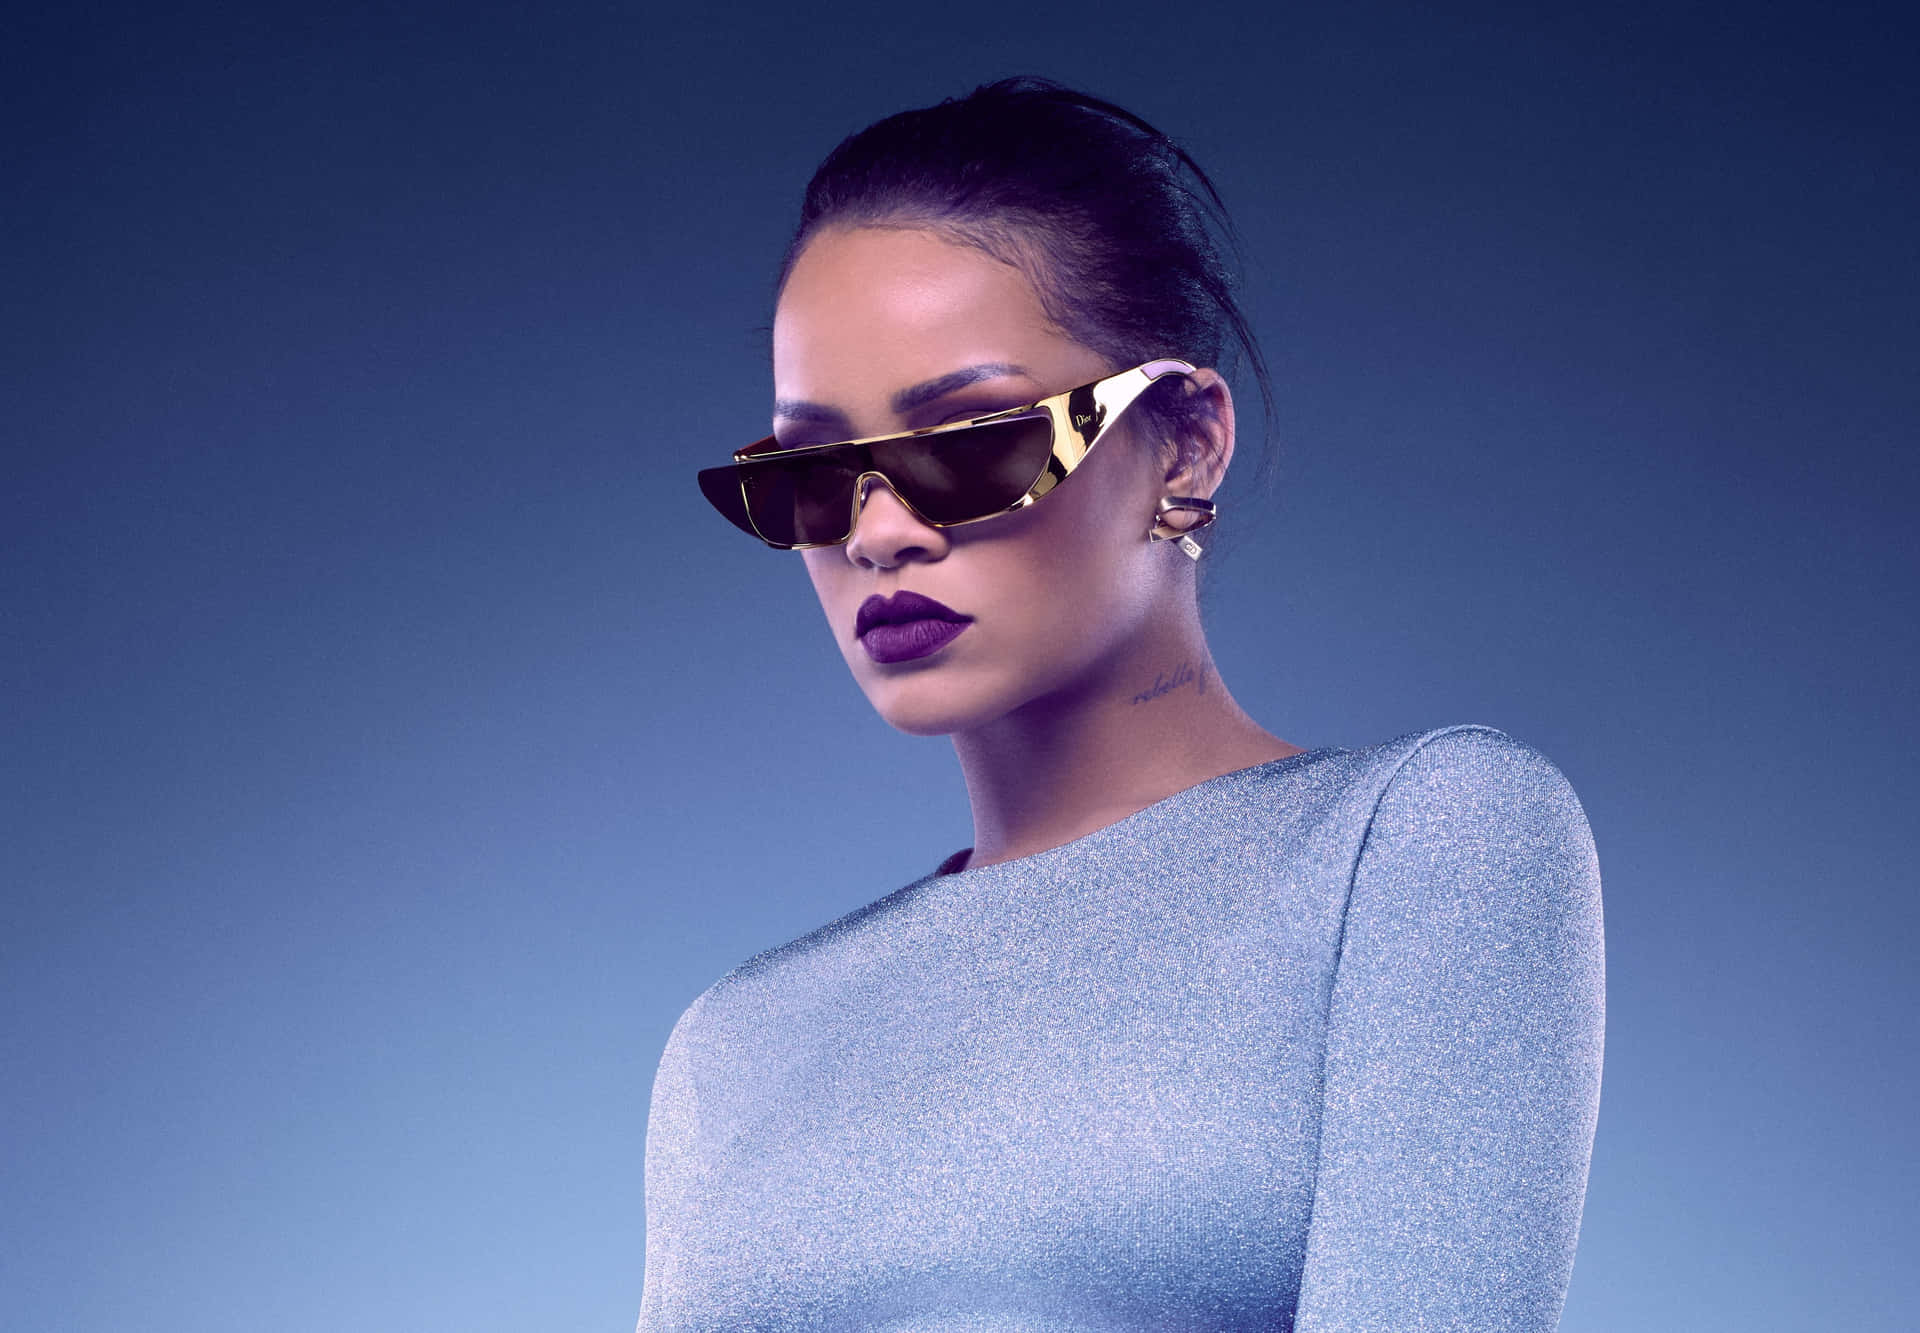 Rihannaexibe Seu Glamour E Estilo.